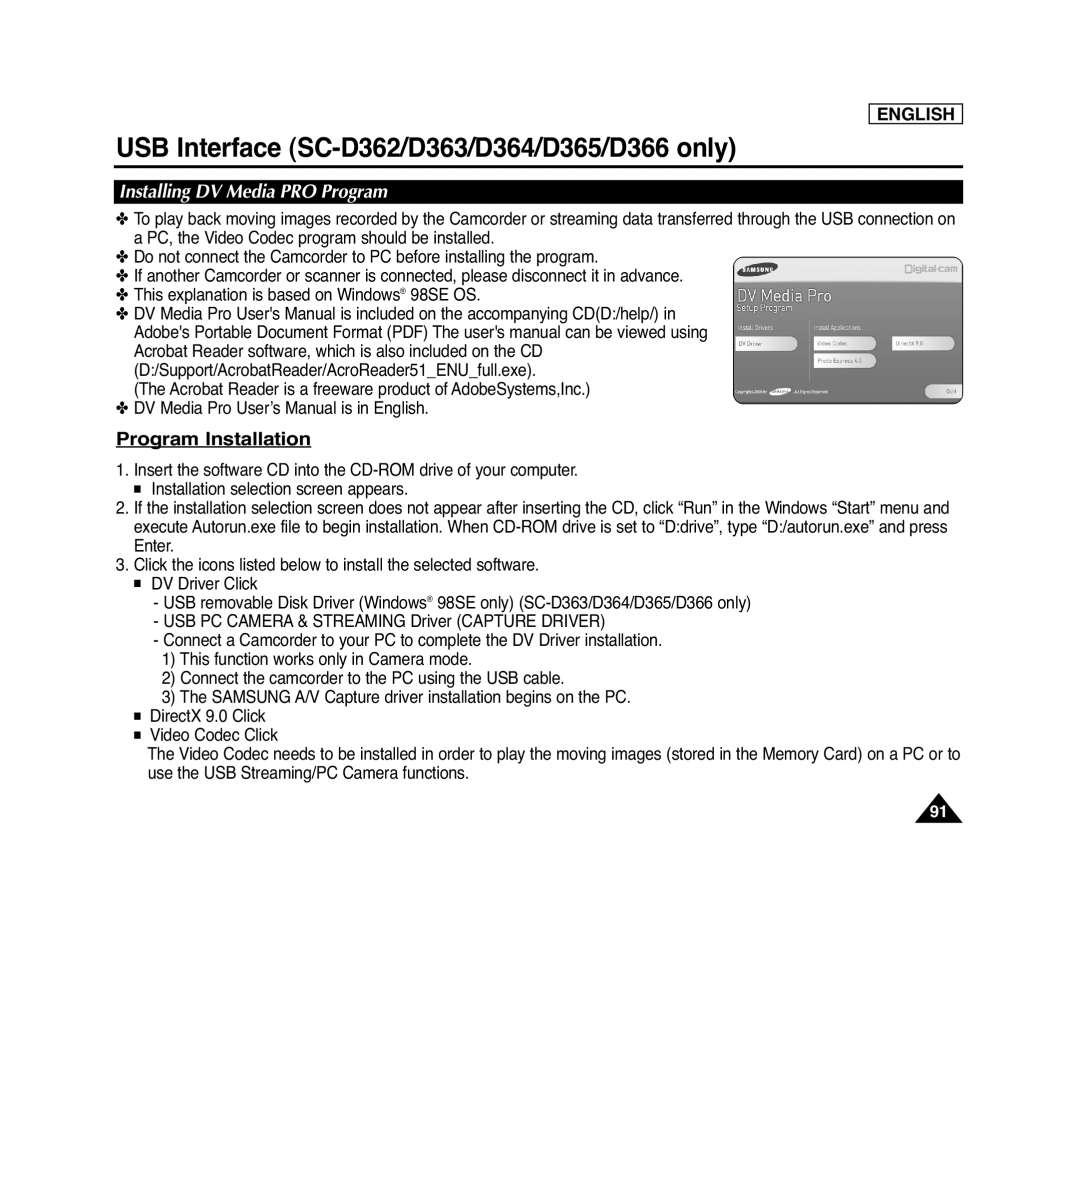 Samsung Program Installation, Installing DV Media PRO Program, USB Interface SC-D362/D363/D364/D365/D366 only, English 